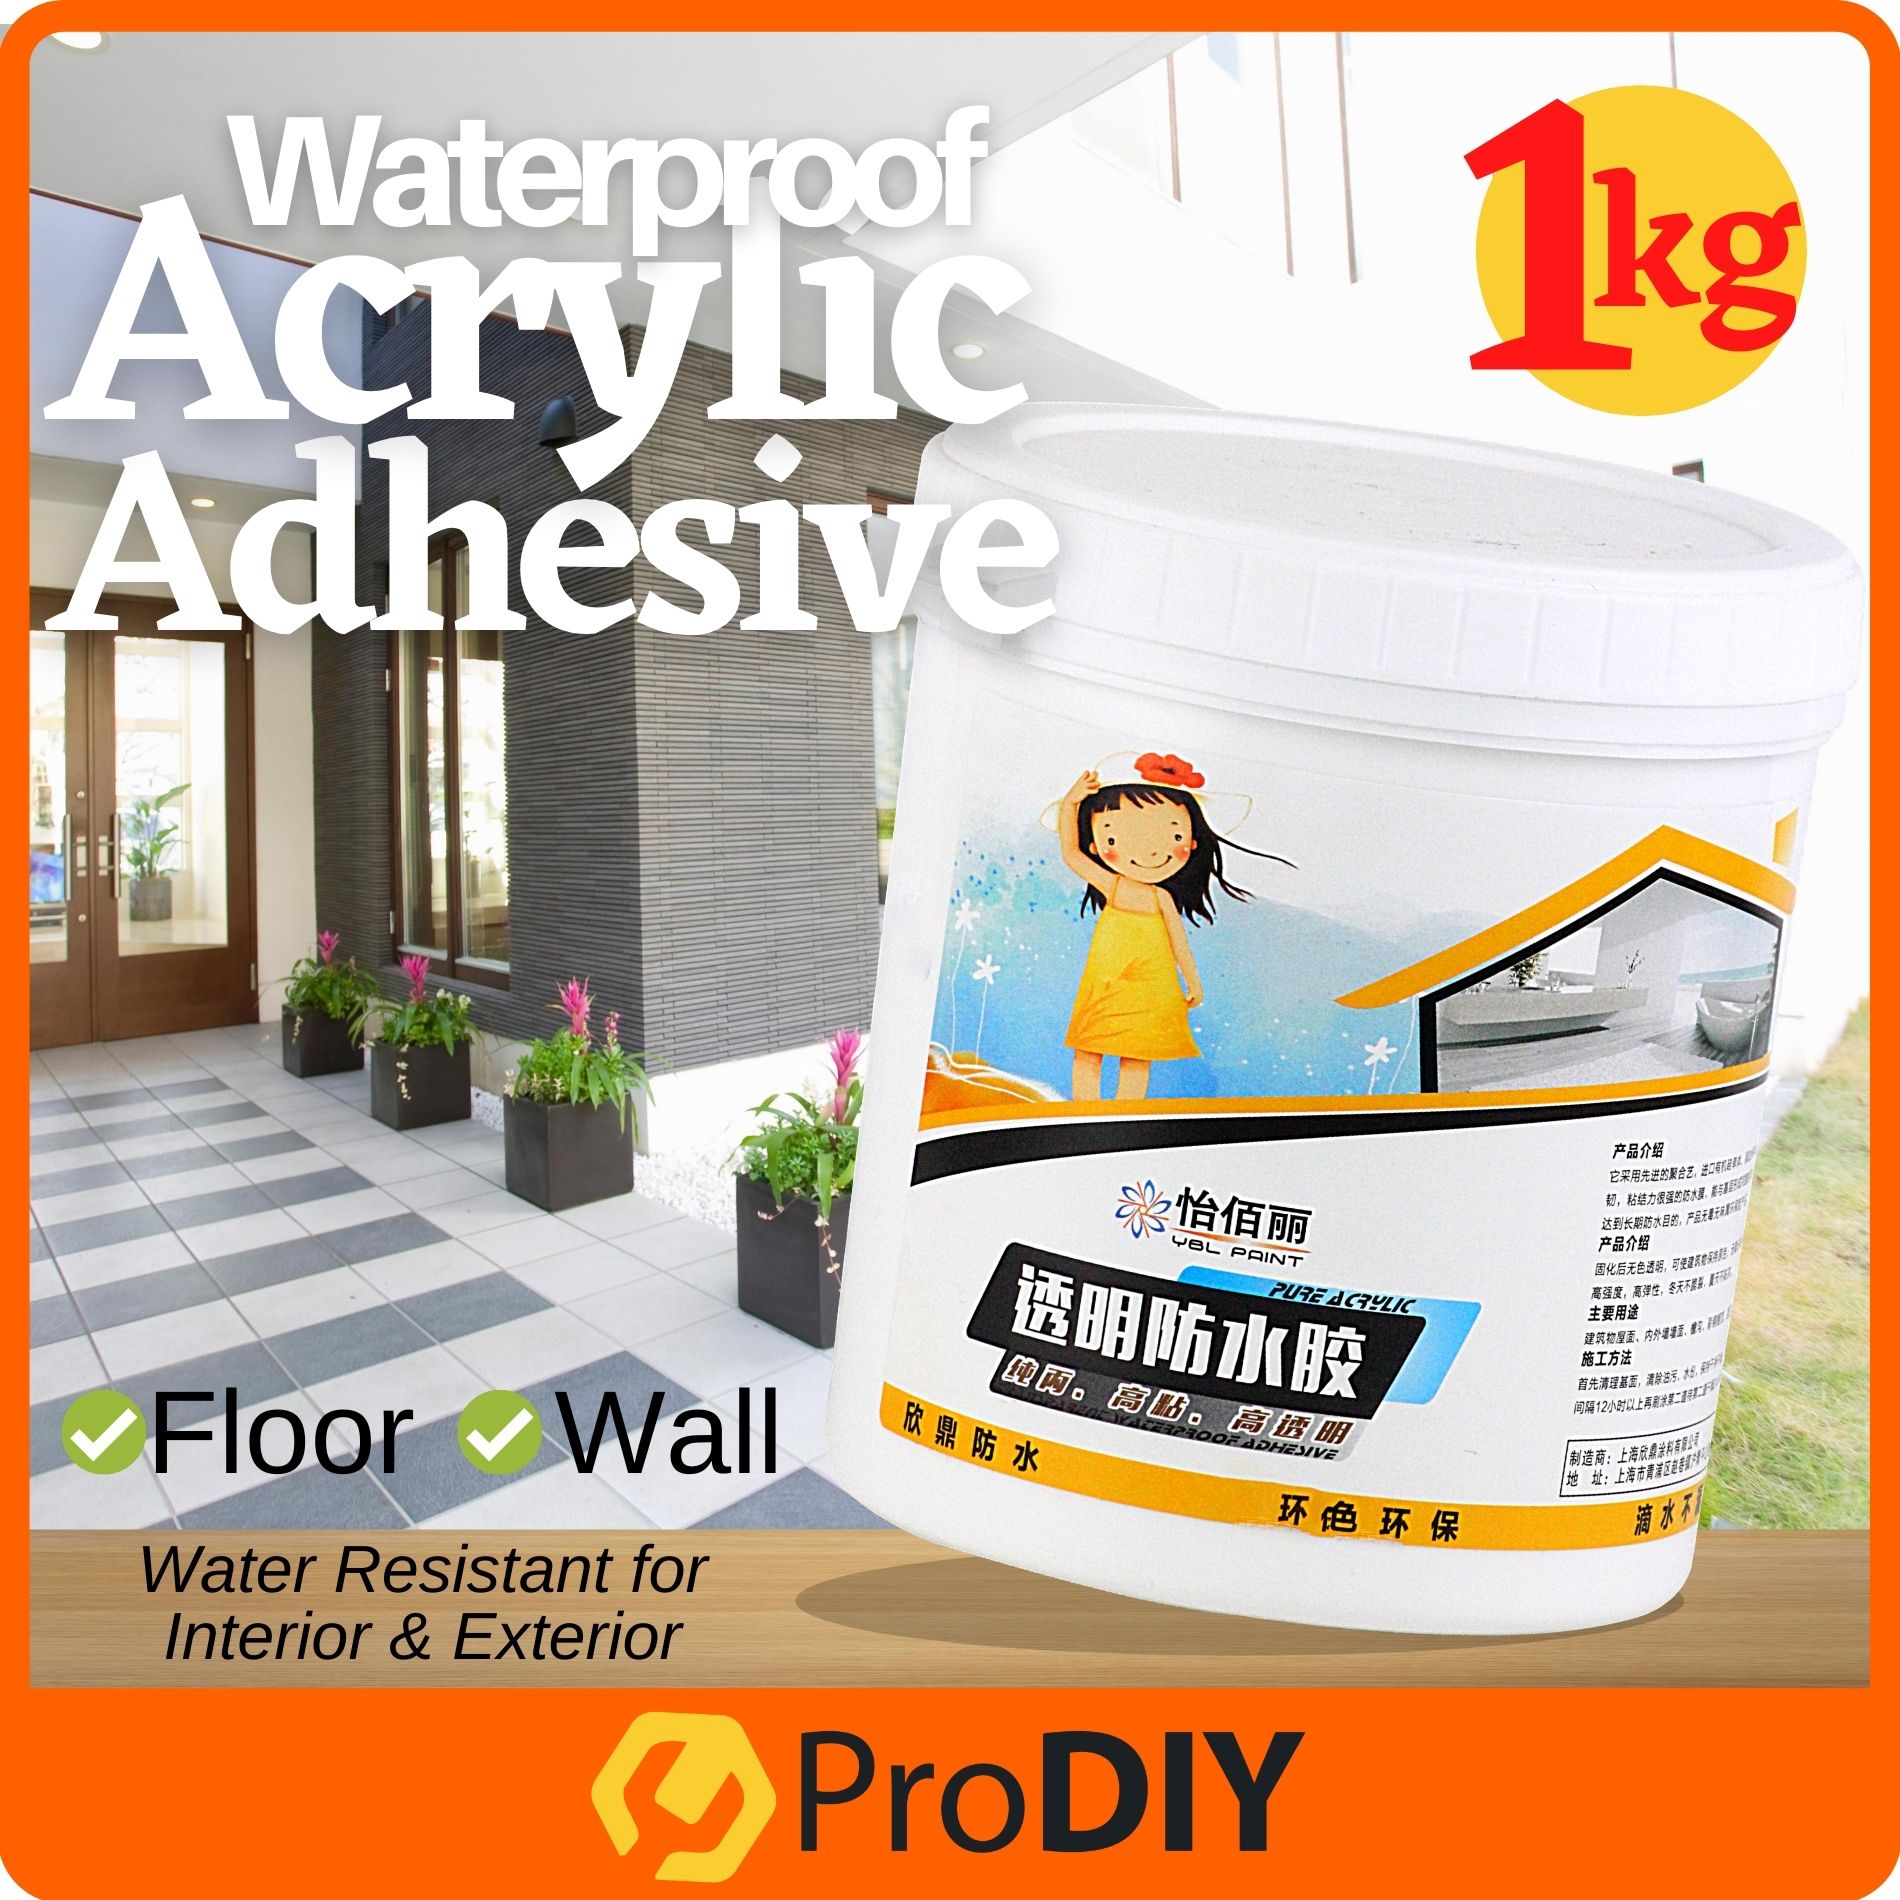 YIBAILI 1KG Waterproof Acrylic Adhesive Coating Water Resistant for Interior Exterior Wall Floor Pelapik Lantai Dinding